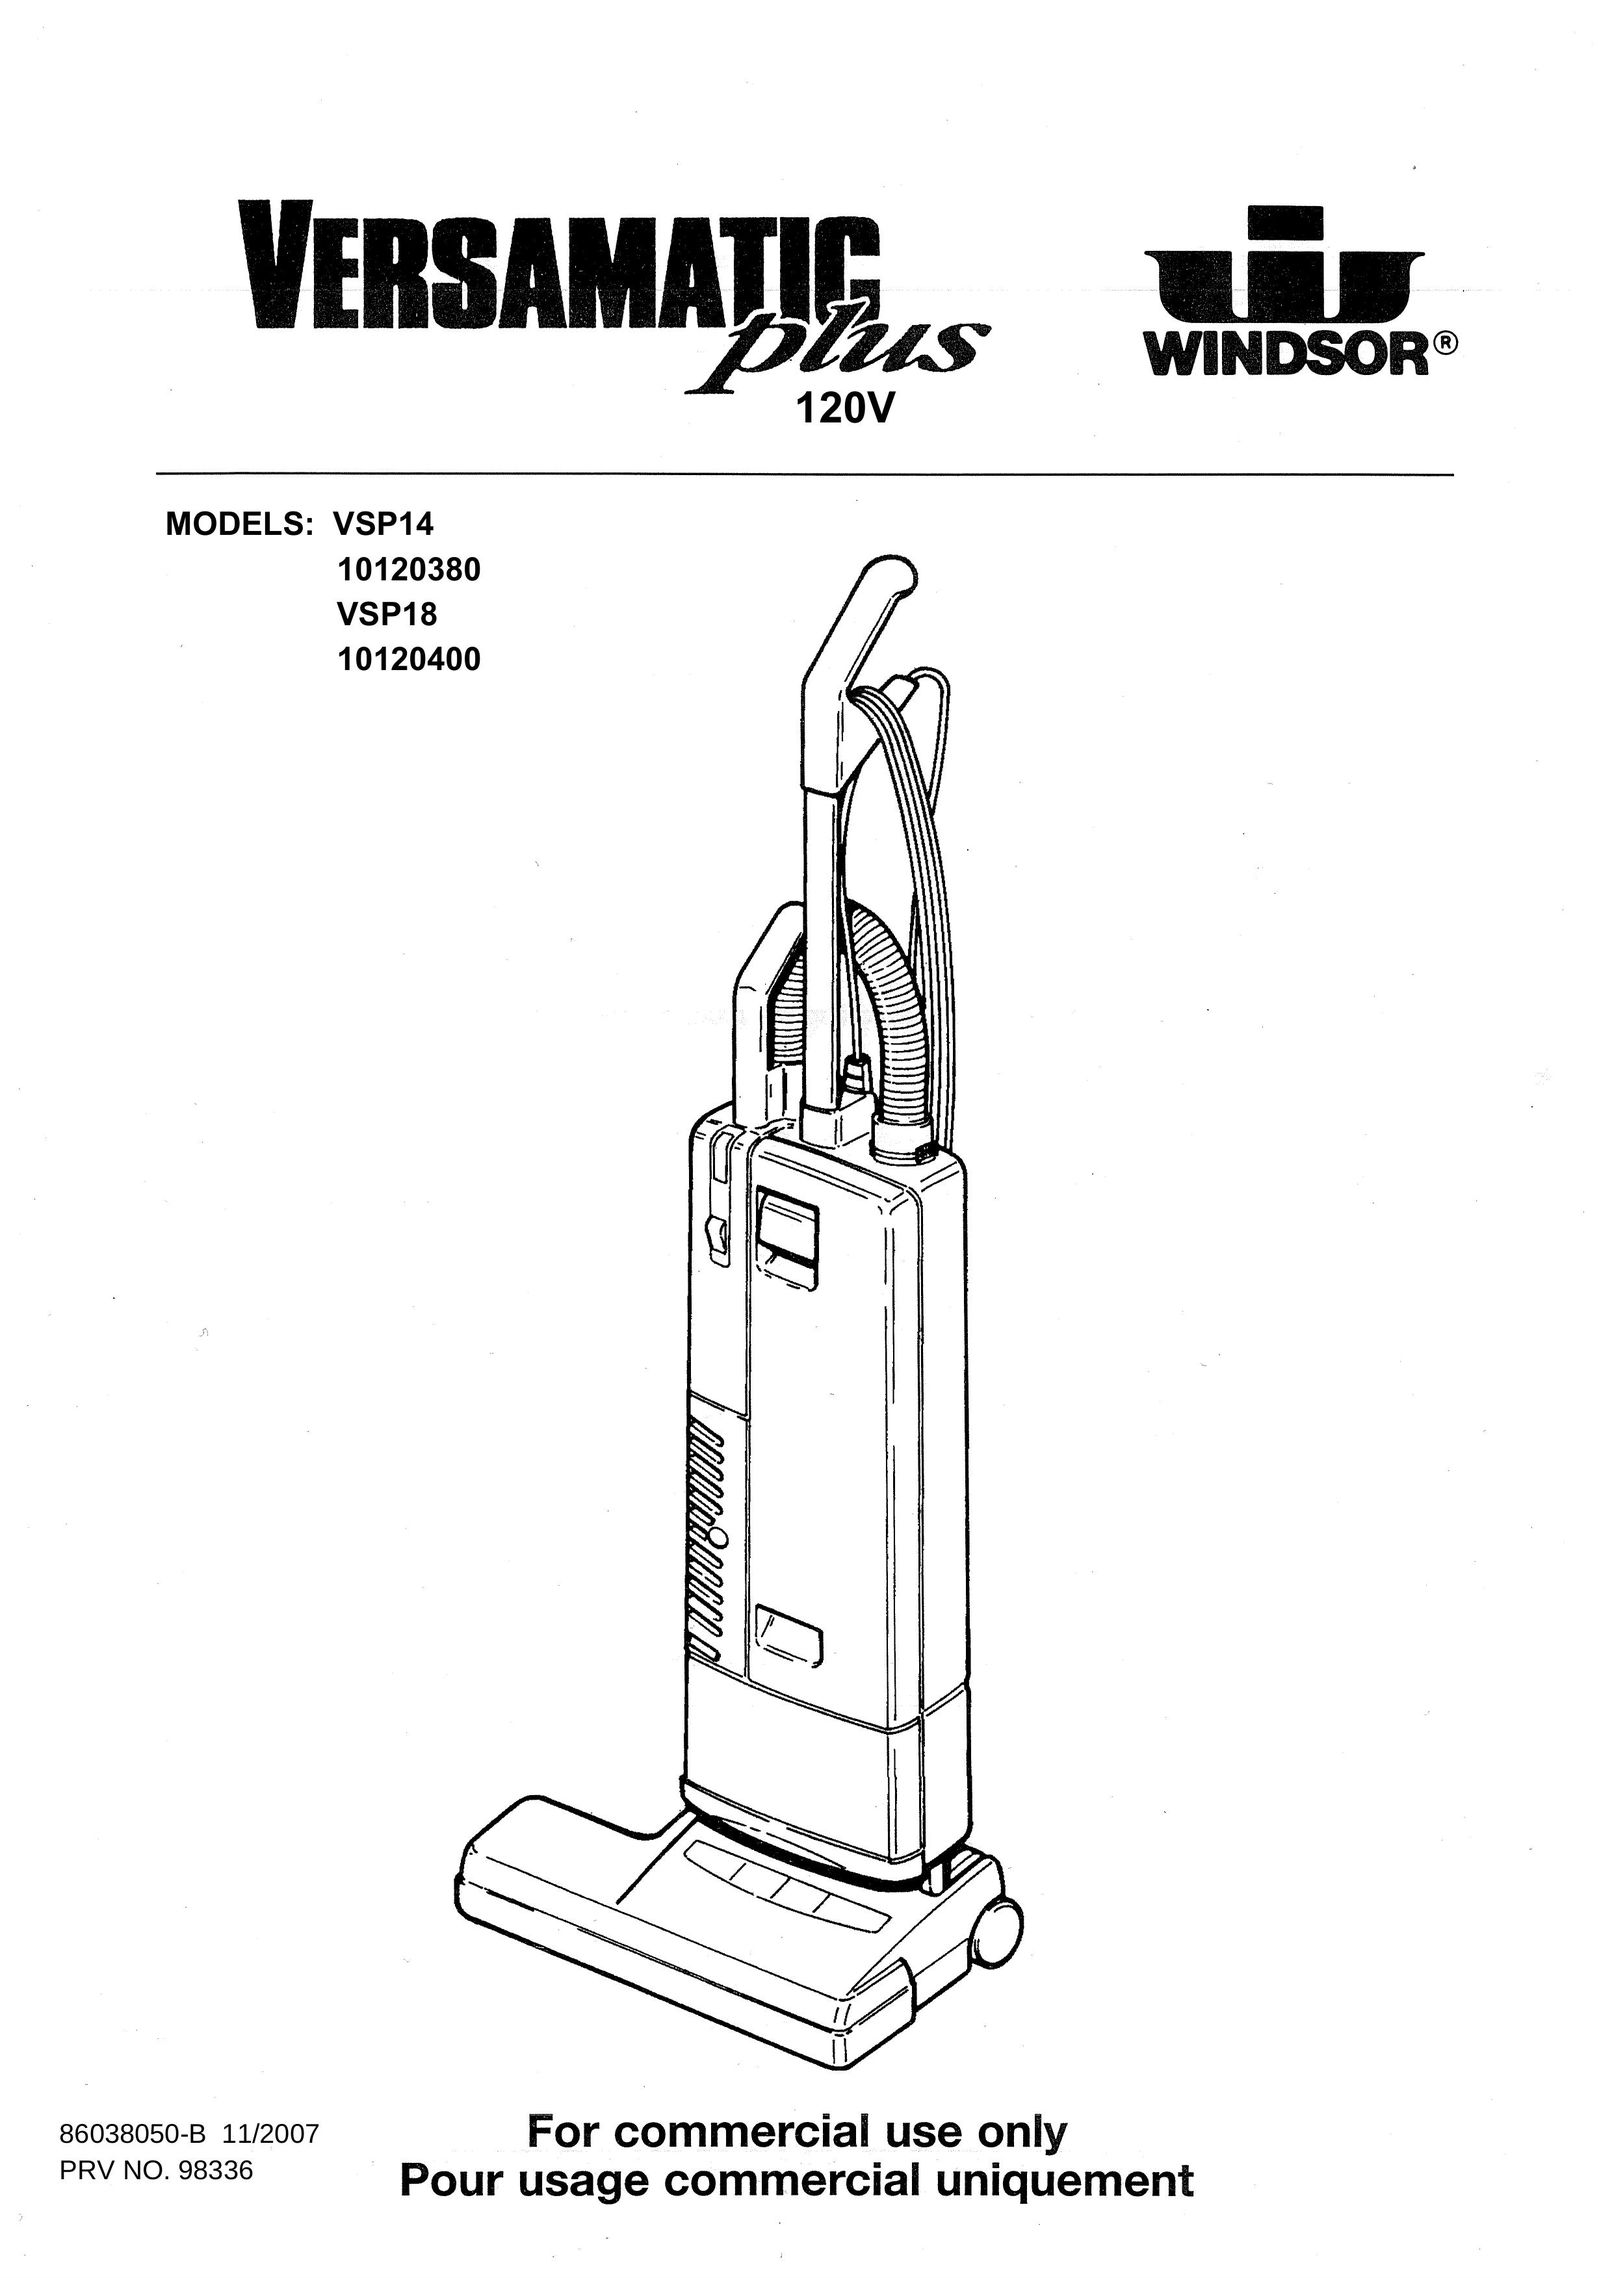 Windsor 10120400 Vacuum Cleaner User Manual